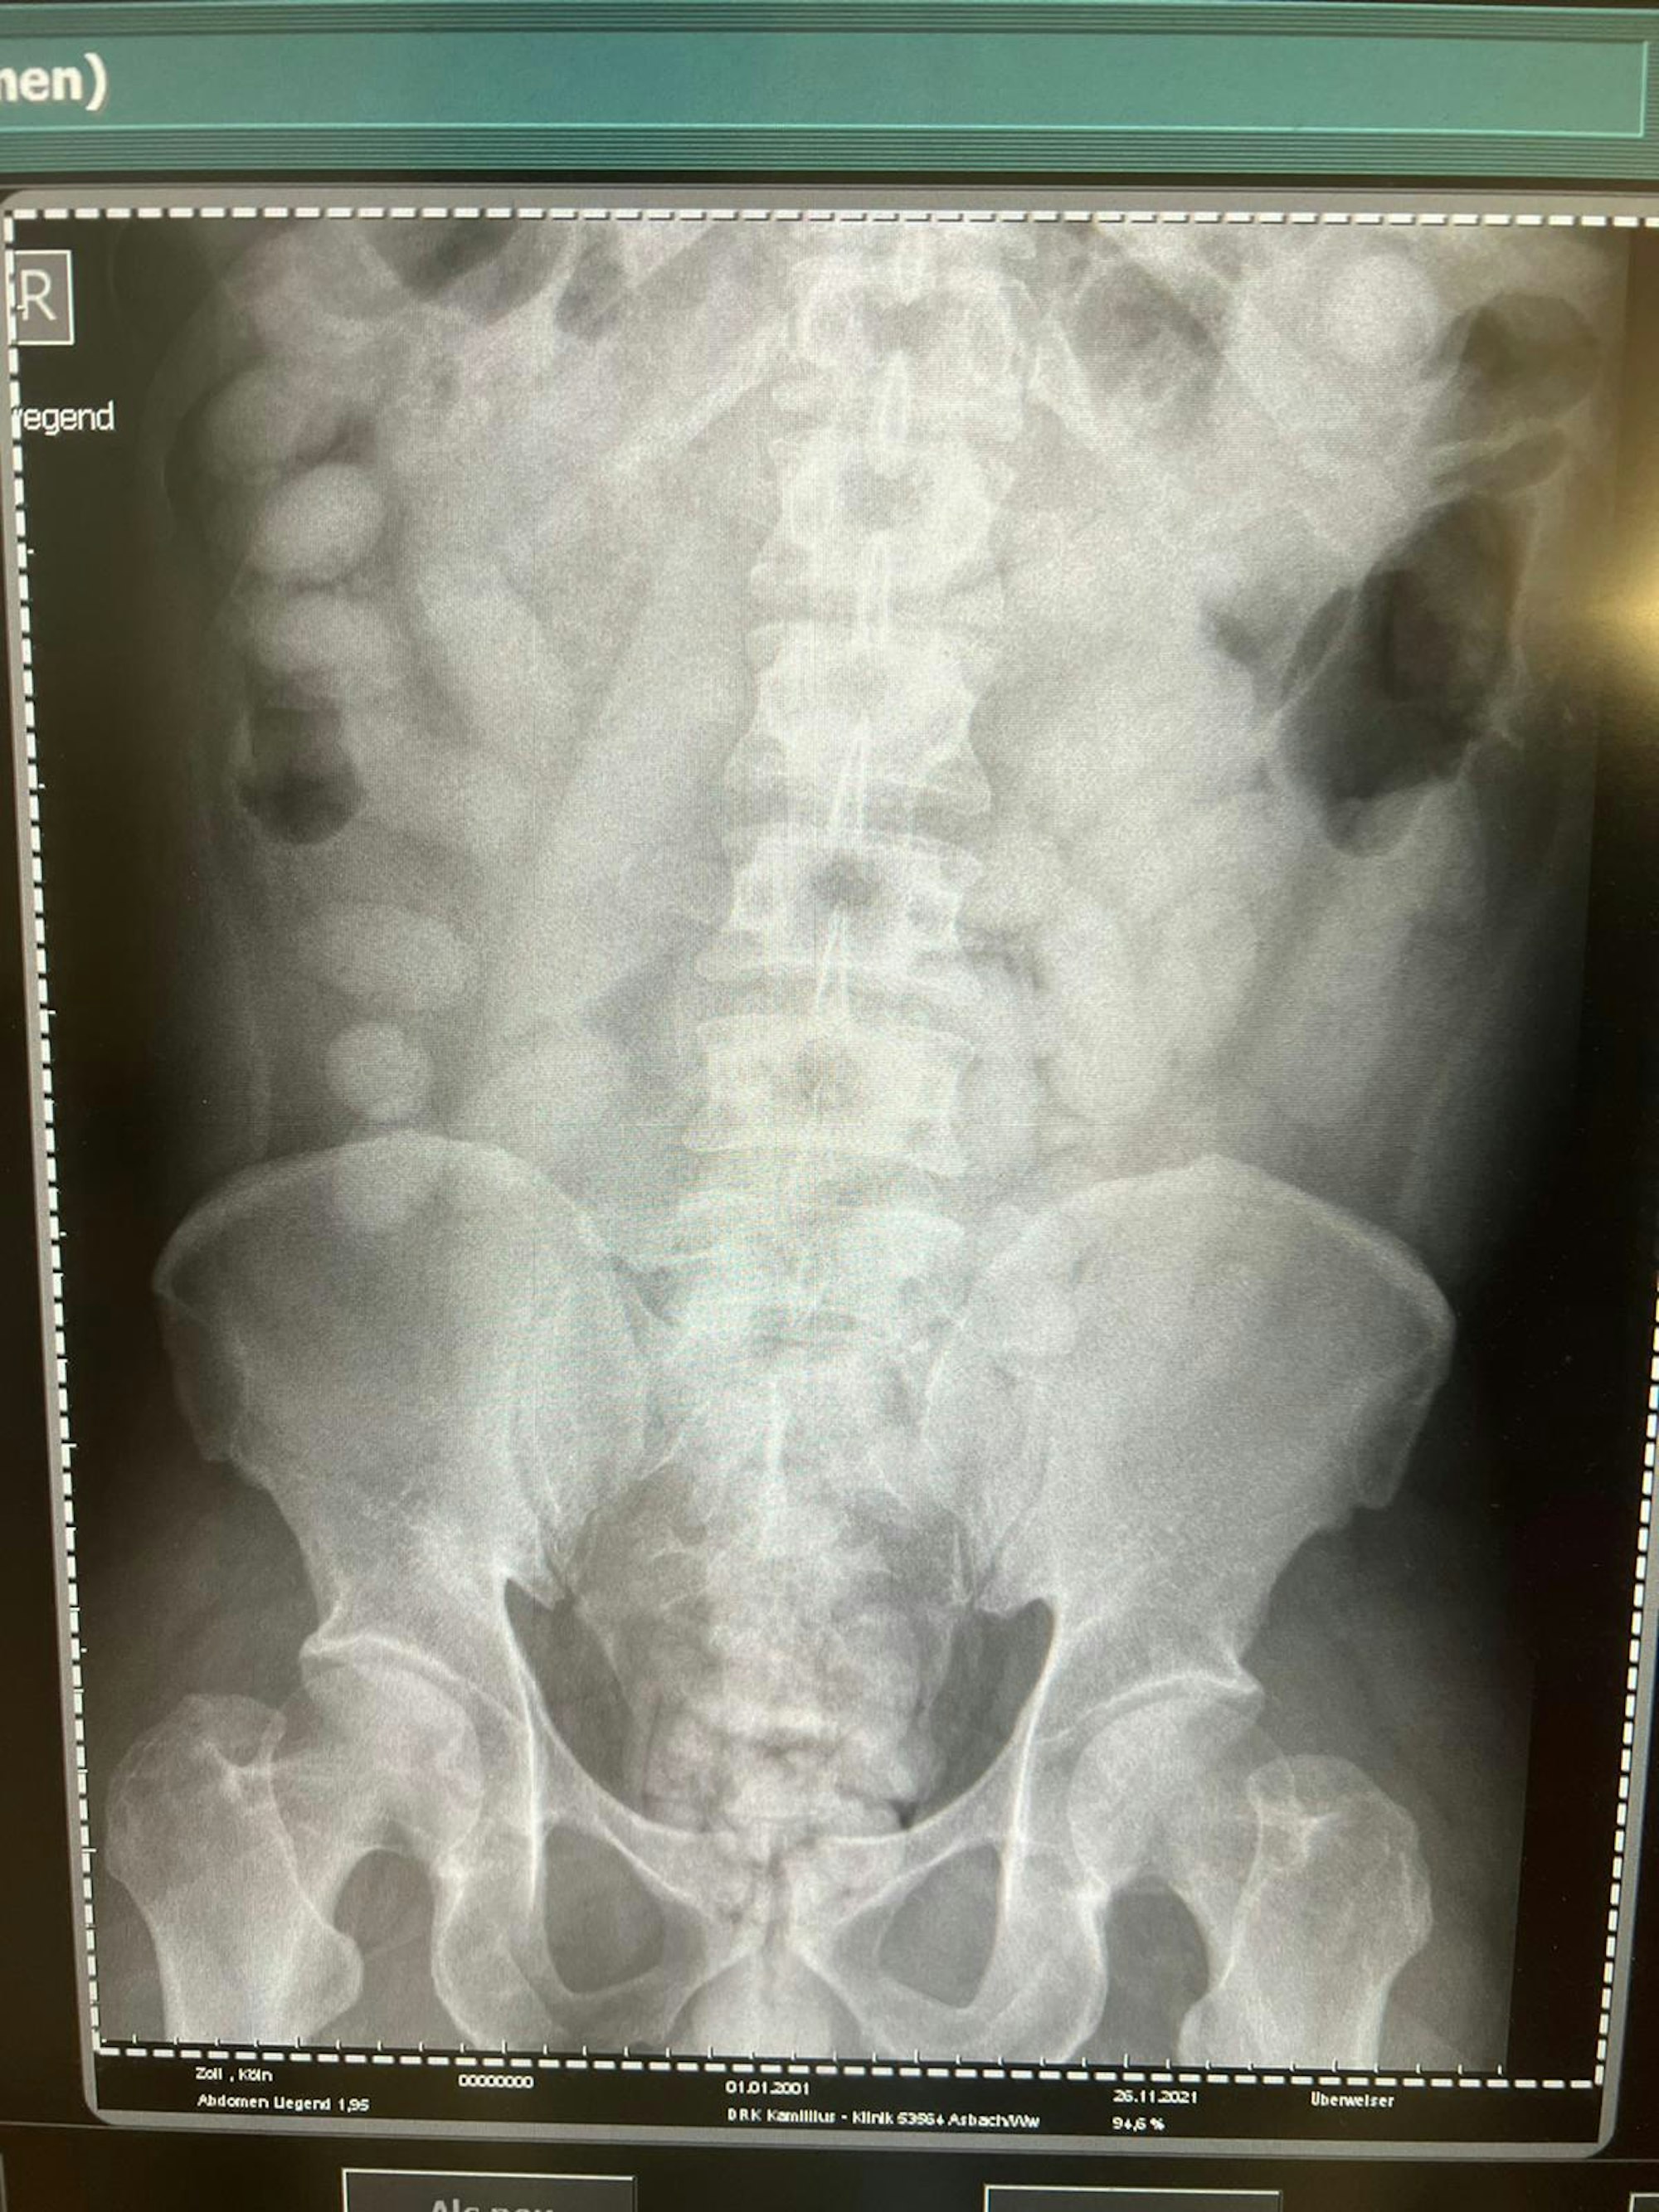 Auf dem Röntgenbild ganz links sind kleine, ovale Bodypacks mit Rauschgift zu erkennen